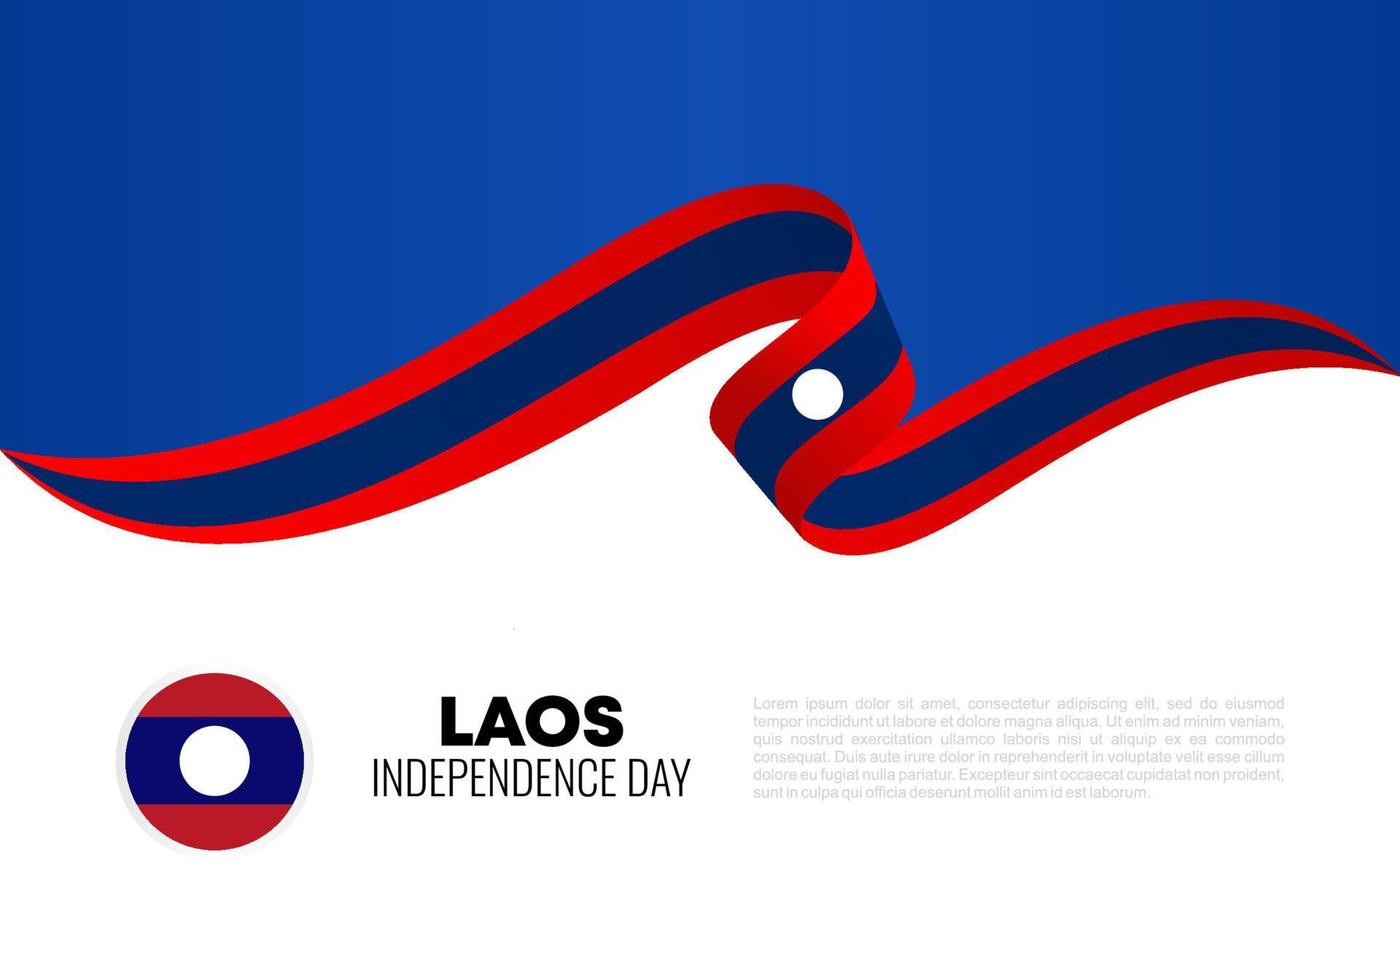 fond de la fête de l'indépendance du laos pour la célébration du 2 décembre. vecteur